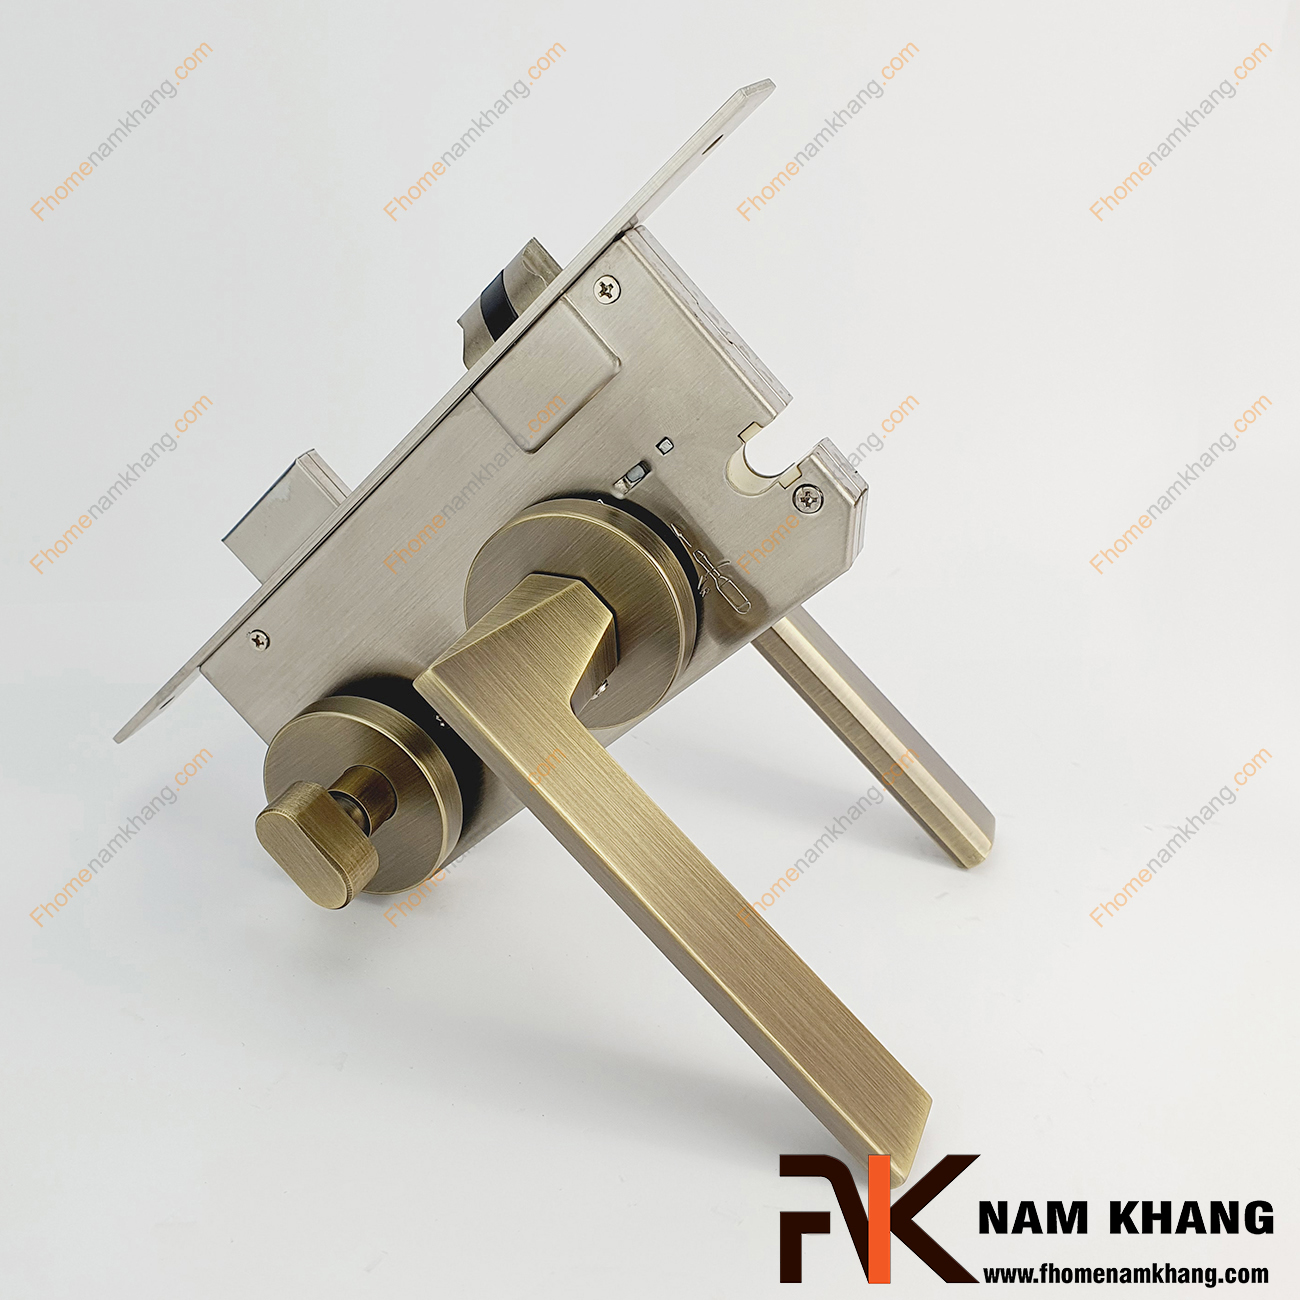 Khóa cửa phân thể dạng trơn màu đồng rêu xước NK570-RX được sản xuất từ hợp kim cao cấp. Dòng khóa này có thiết kế phần ốp khóa và tay gạt riêng biệt, khá nhỏ gọn.